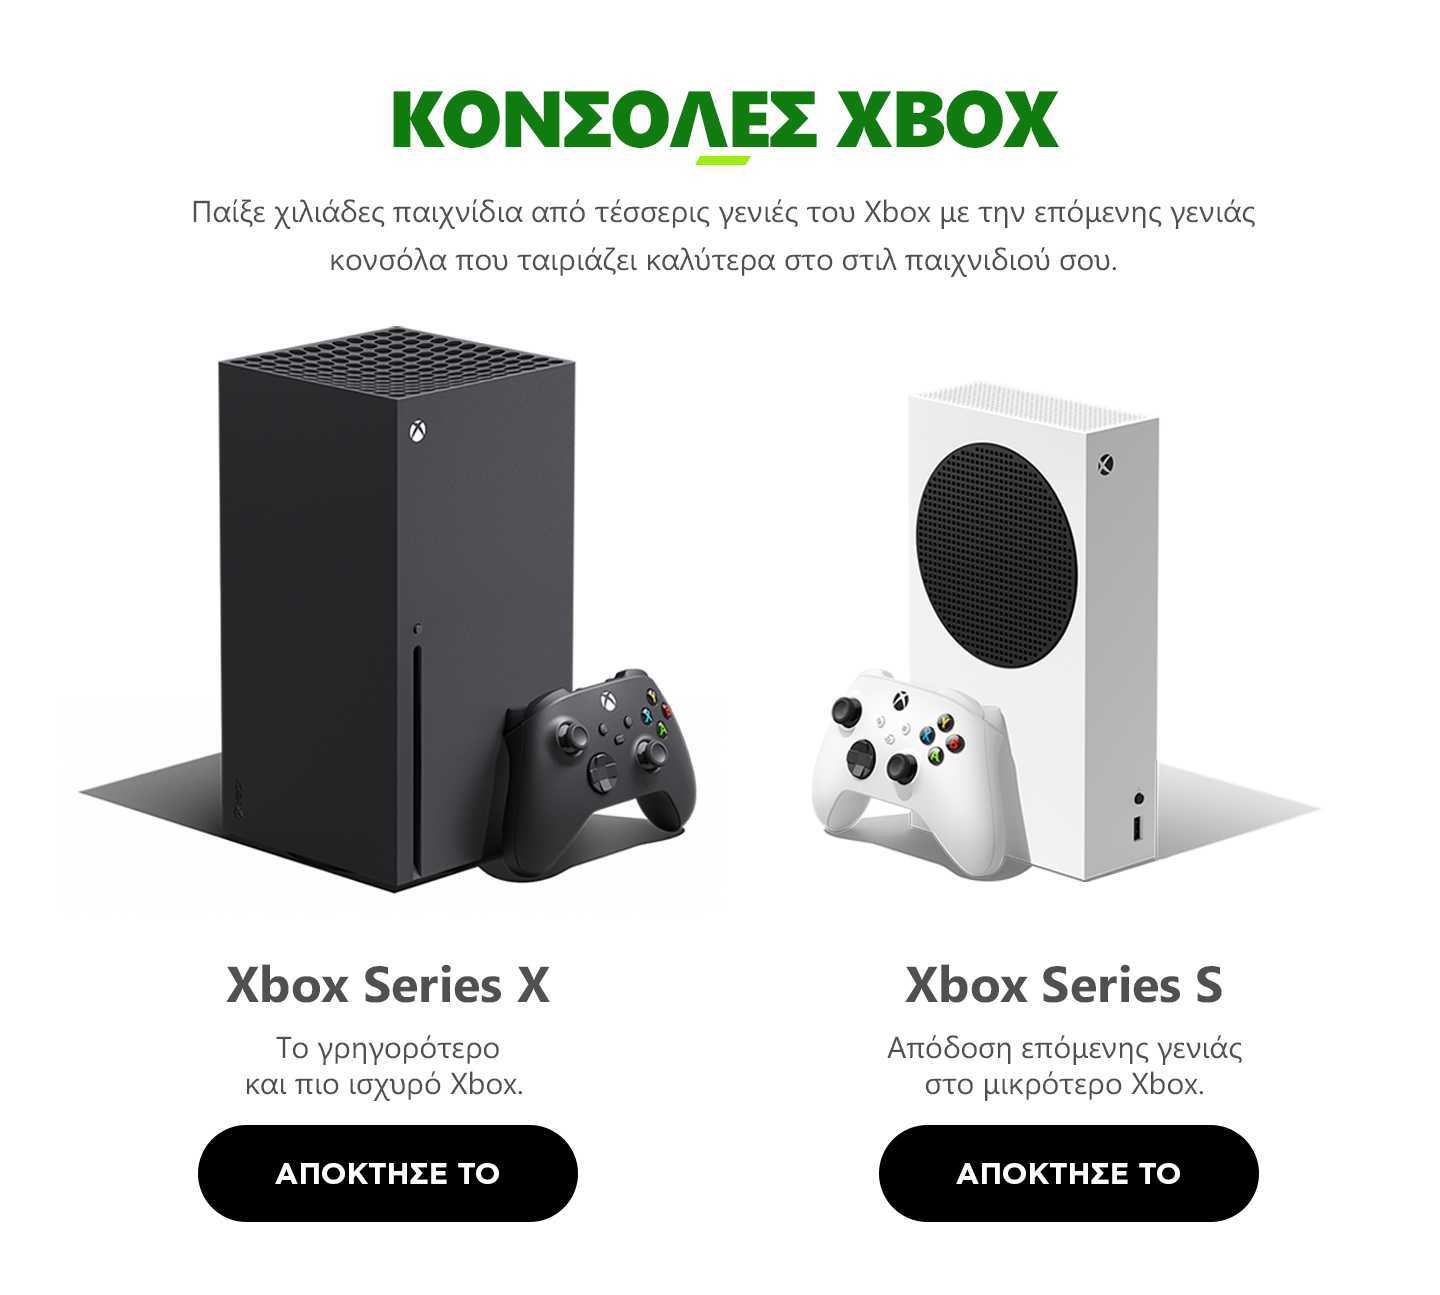 Series x series x разница. Xbox one x габариты. Xbox Series x габариты коробки. Xbox 360 Series x. Xbox Series s габариты.